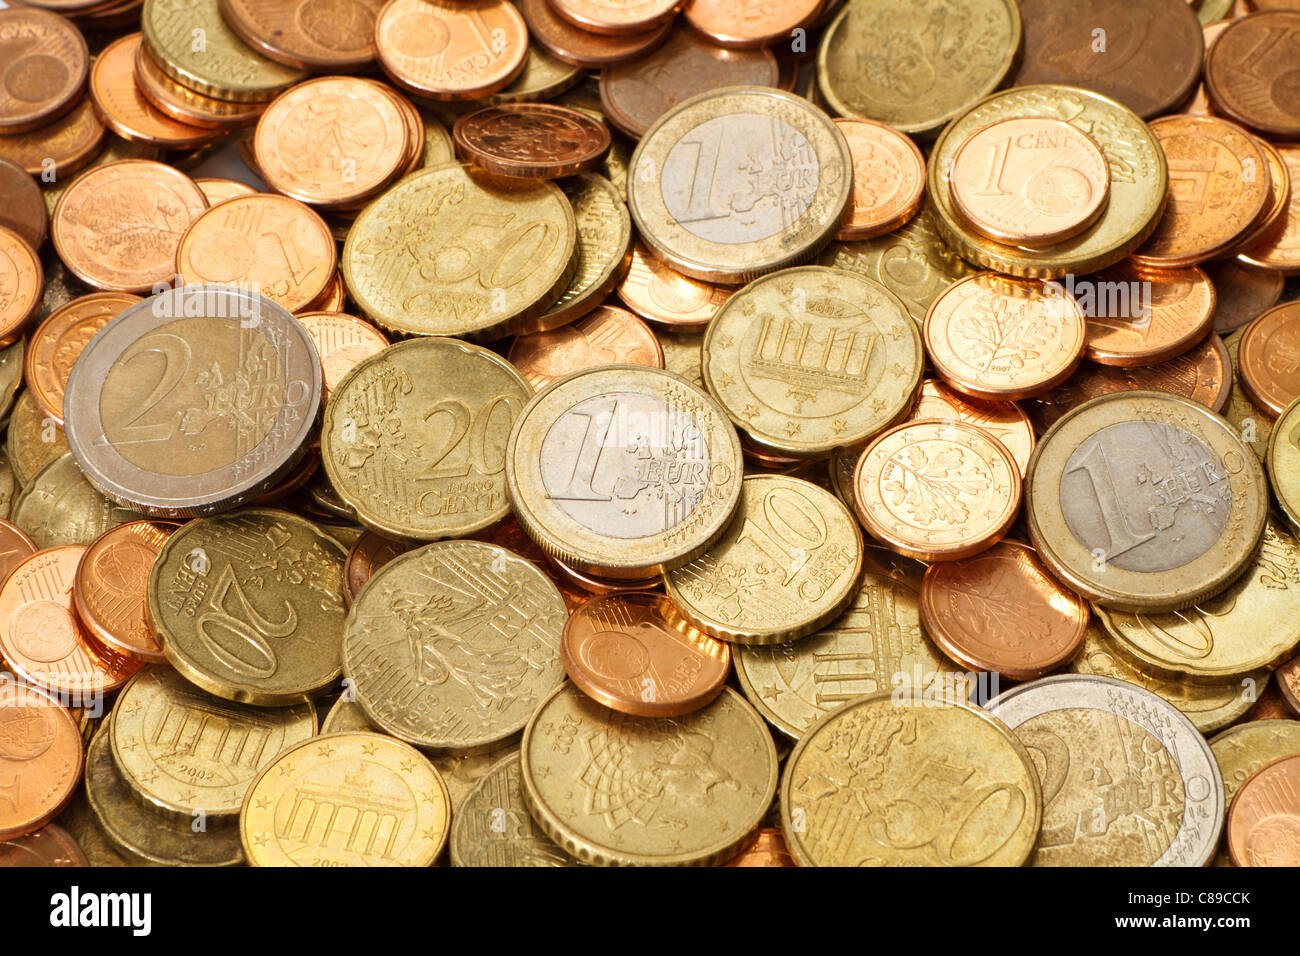 Une pile d'utilisé, distribué, moderne, les pièces en euros. Tous les huit pièces en euros courants sont représentés dans cette image. Banque D'Images